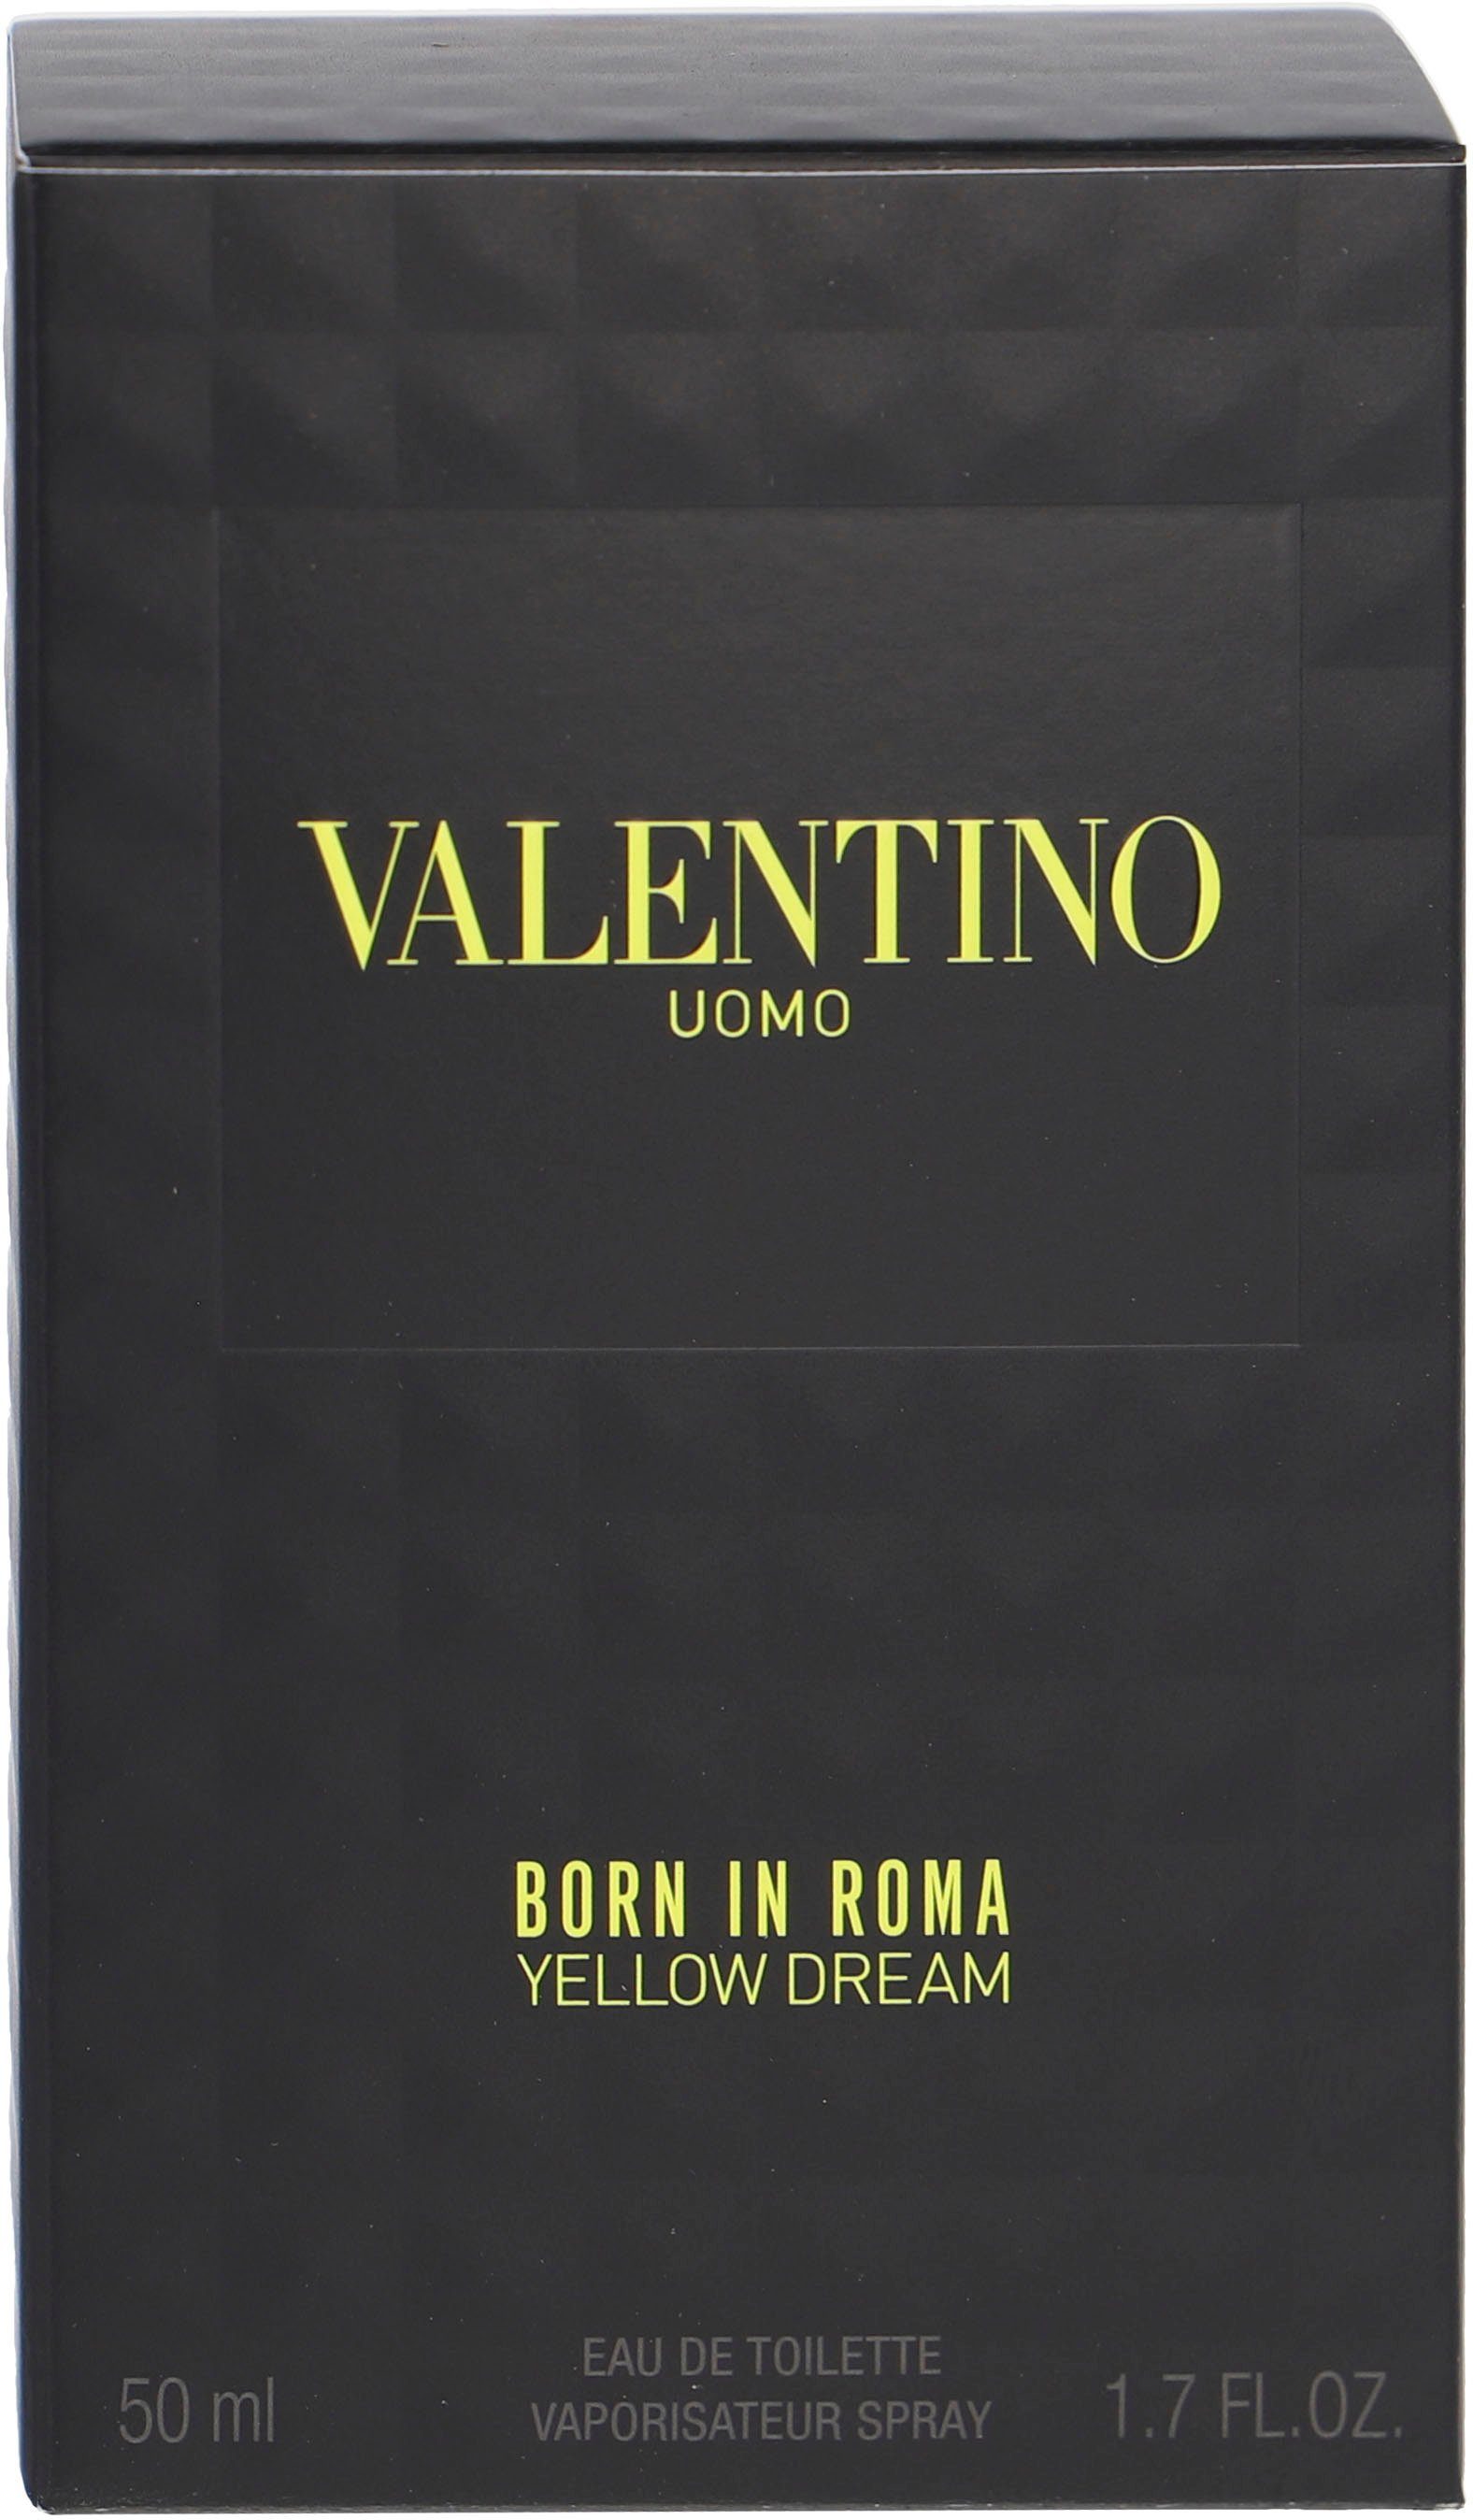 Valentino Eau de Toilette Uomo In Yellow Dream Born Roma